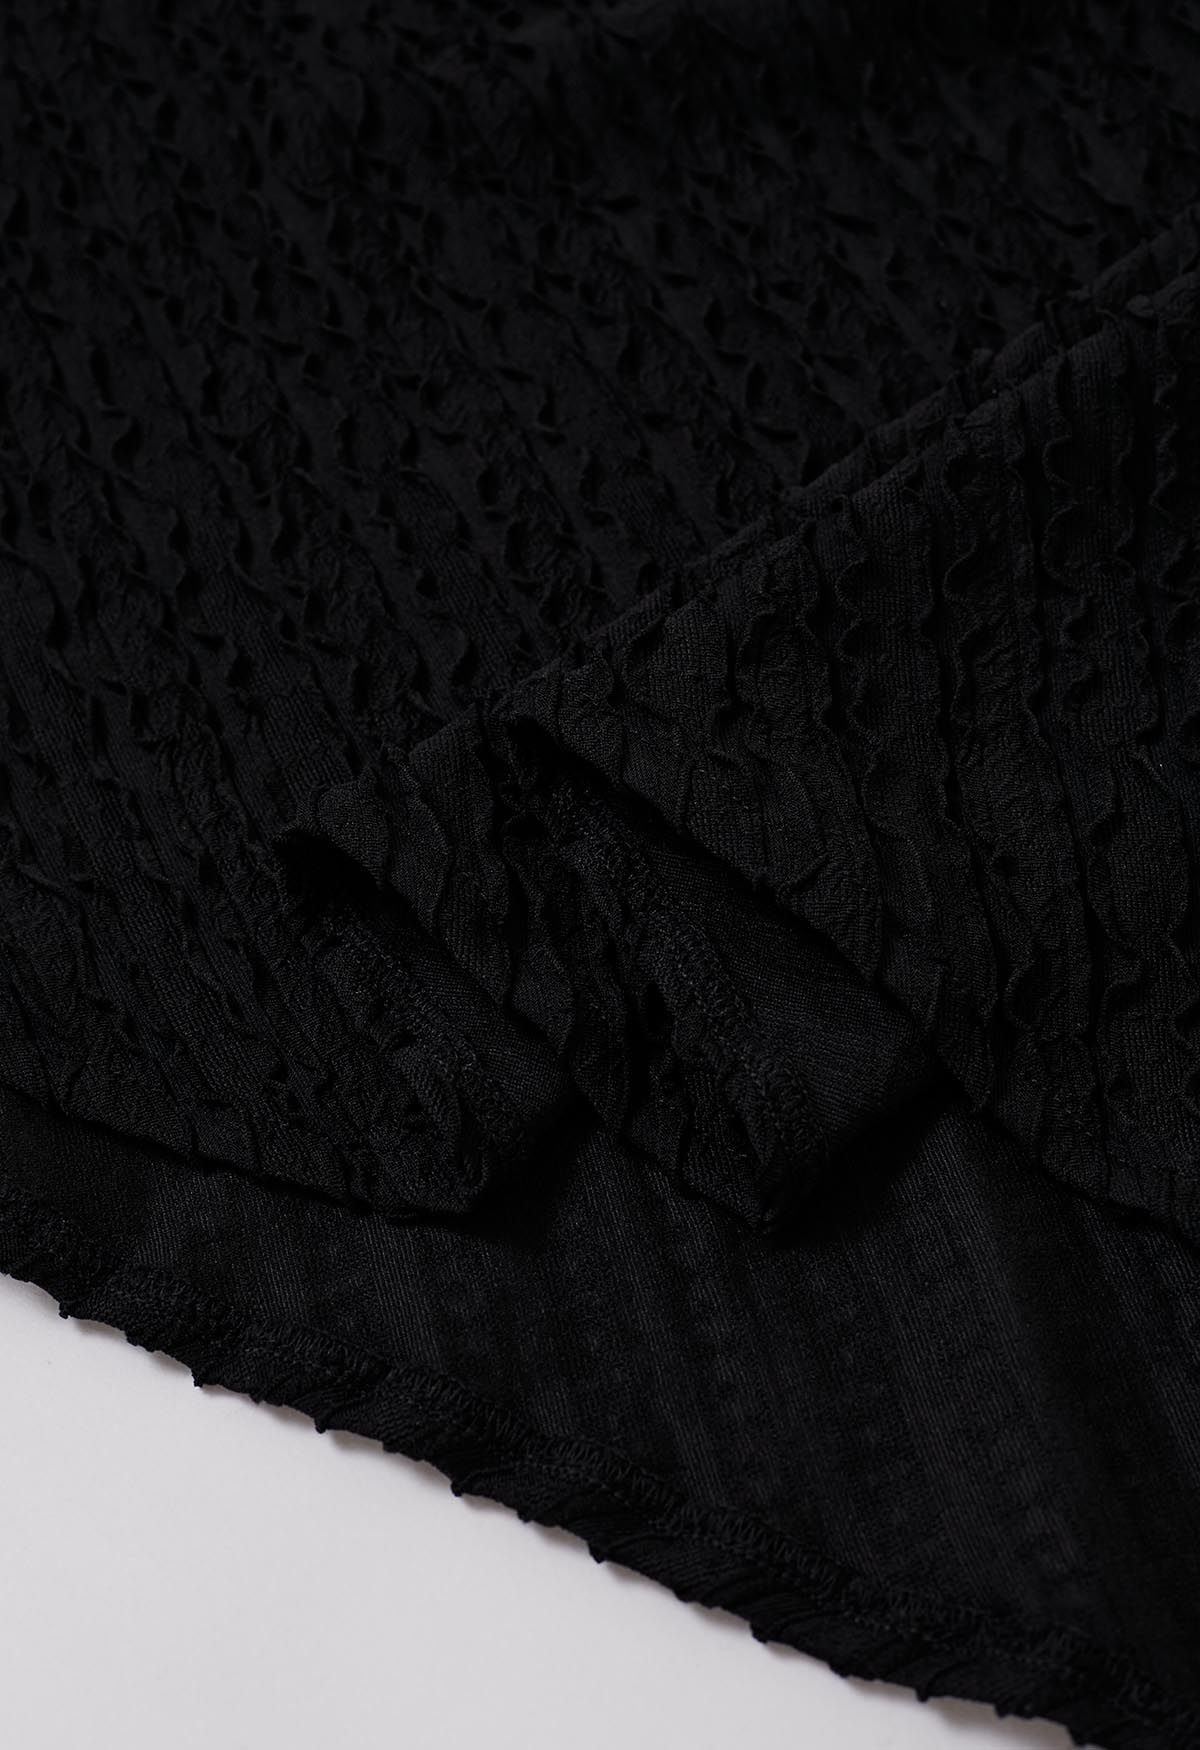 Gewelltes Kleid mit Kragen und Surplice-Ausschnitt in Schwarz